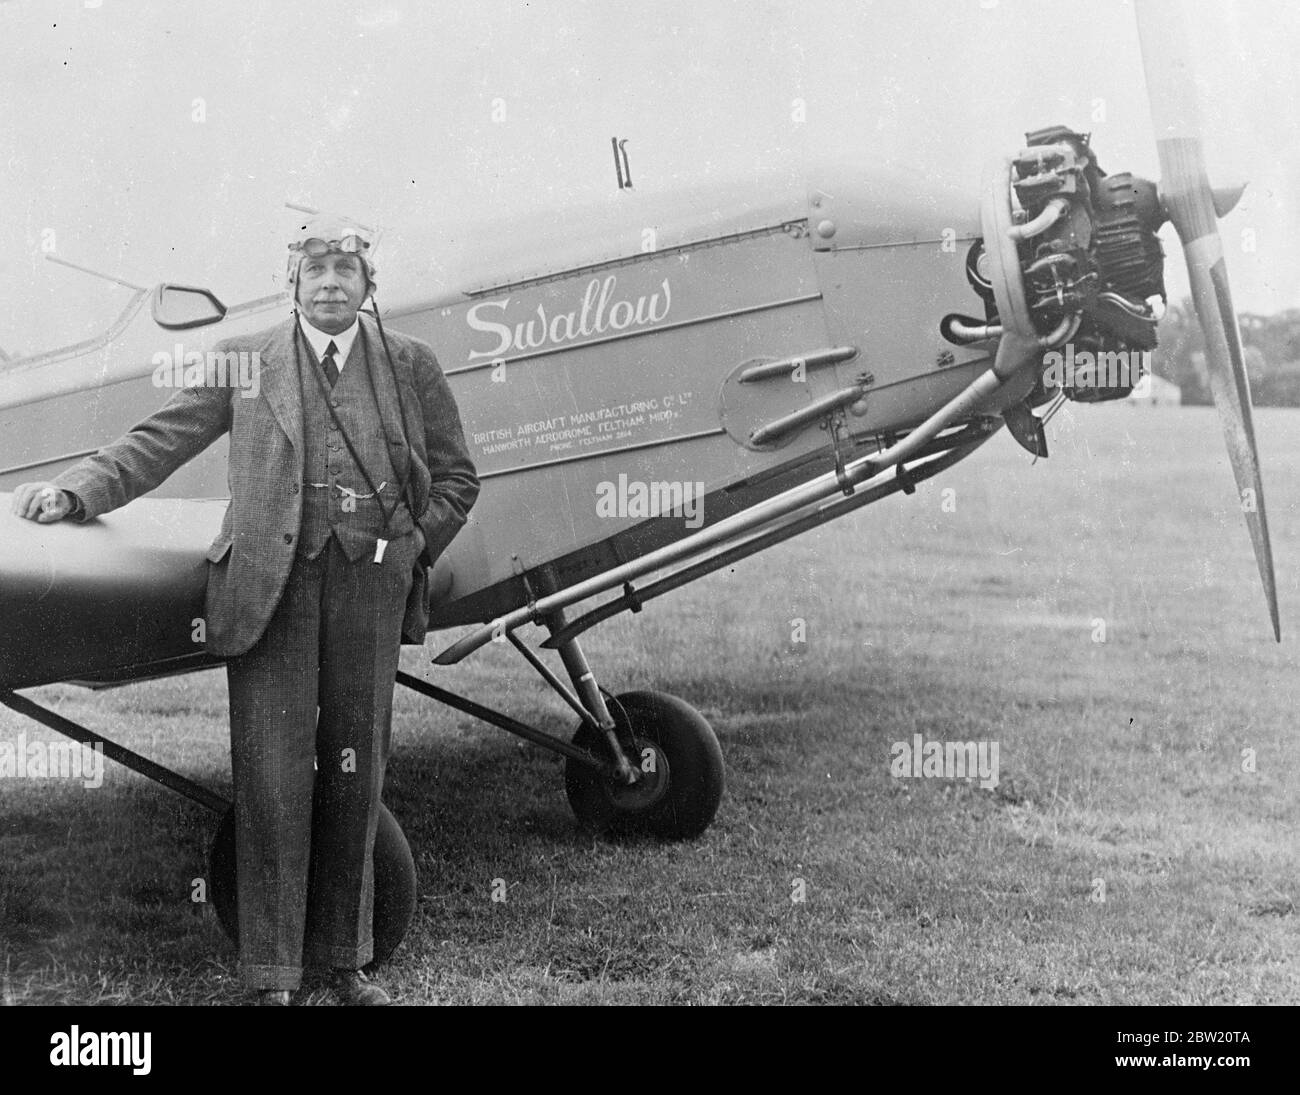 J. A. McMullen, 73-jähriger Pilot, mit seinem neuen Flugzeug am Hanworth Aerodrome, Feltham. Nach der Flucht vor einem autogyro-Unfall hat Herr McMullen wieder das Fliegen aufgenommen. Dieses Mal pilotieren wir ein leichtes Flugzeug von B. A. Swallow. 25 Juni 1937 Stockfoto